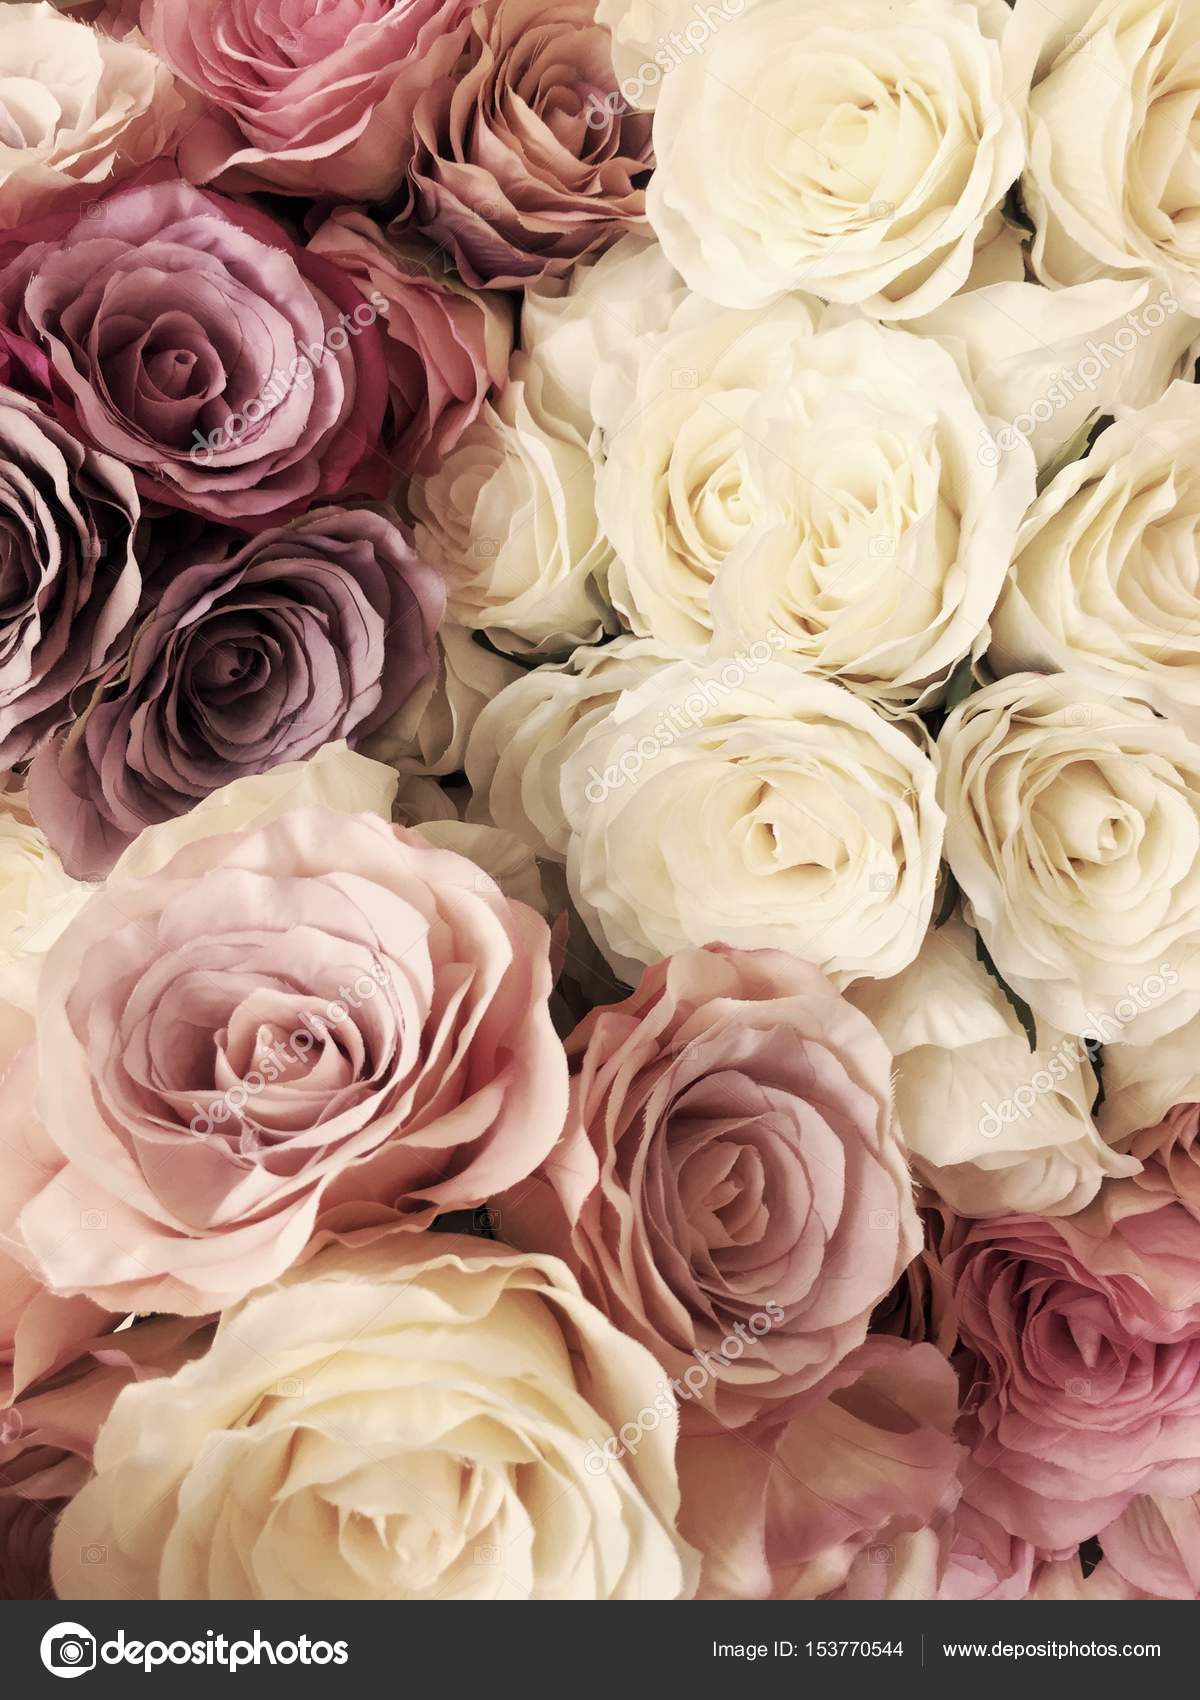 Hoa là một đề tài trang trí không bao giờ cũ. Màu hồng tươi sáng và độc đáo của những bông hoa đầy dịu dàng này sẽ mang lại một không gian sống động và thoải mái cho ngôi nhà của bạn.